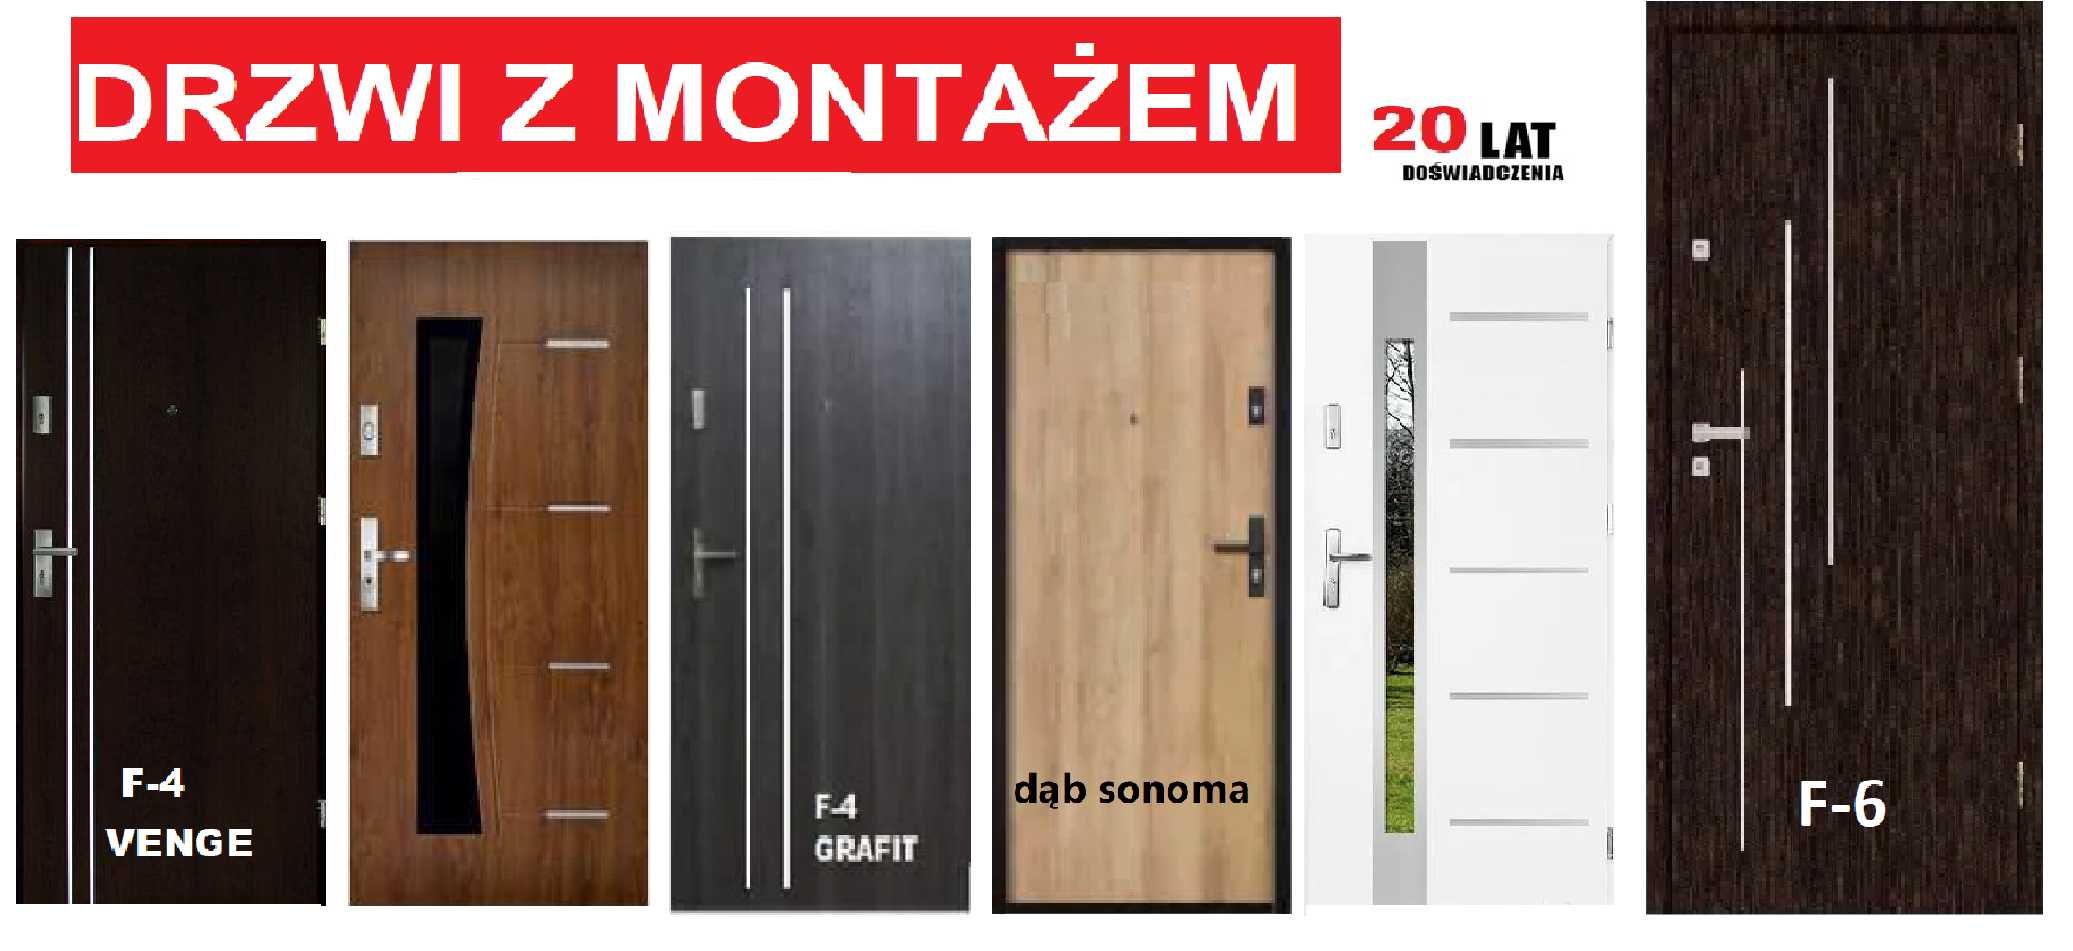 Drzwi zewnętrzne z montażem wejściowe, metalowe -drewniane -do bloku